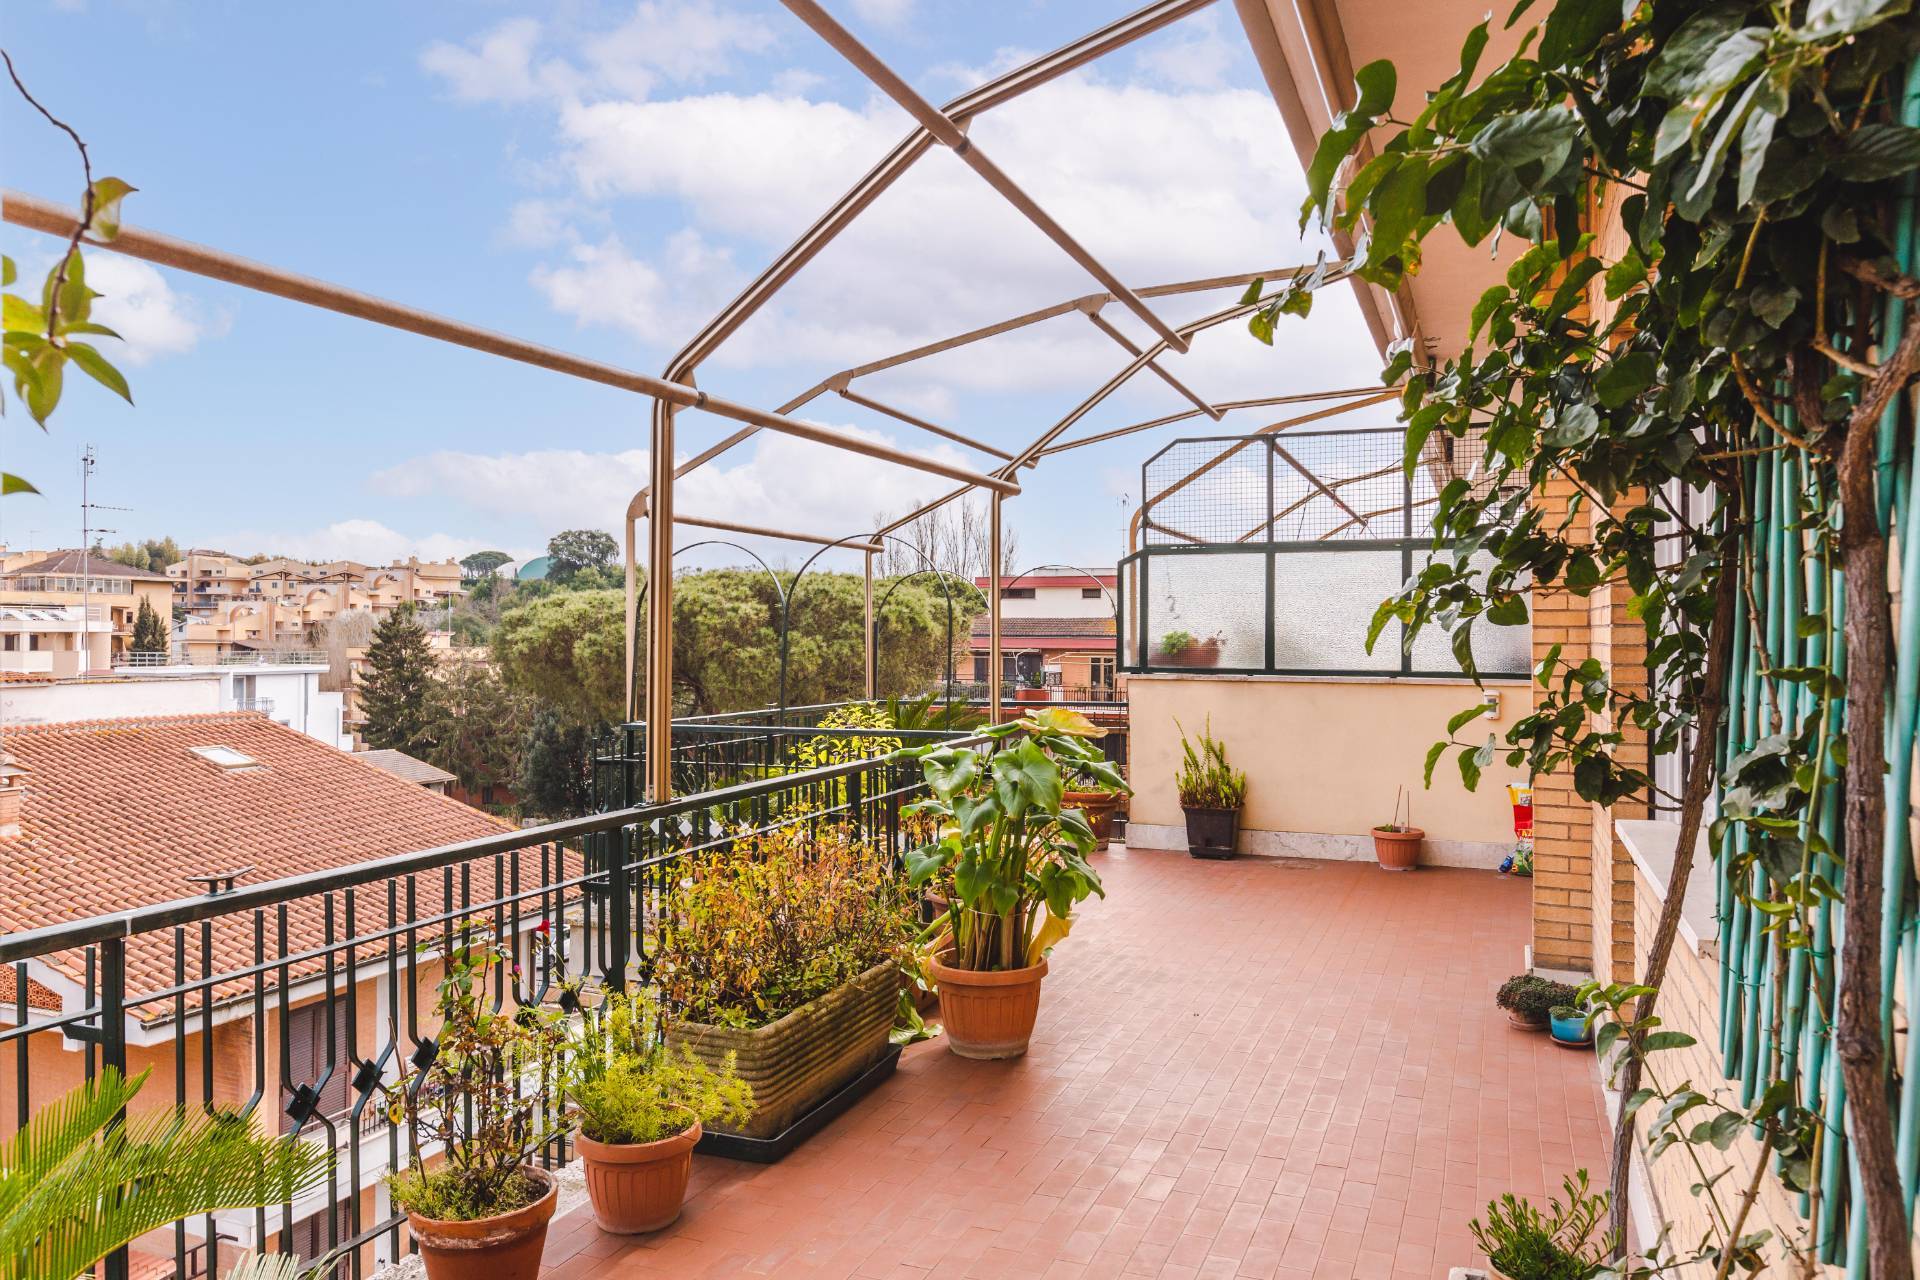 Appartamento in vendita a Roma, 5 locali, zona Zona: 41 . Castel di Guido - Casalotti - Valle Santa, prezzo € 325.000 | CambioCasa.it